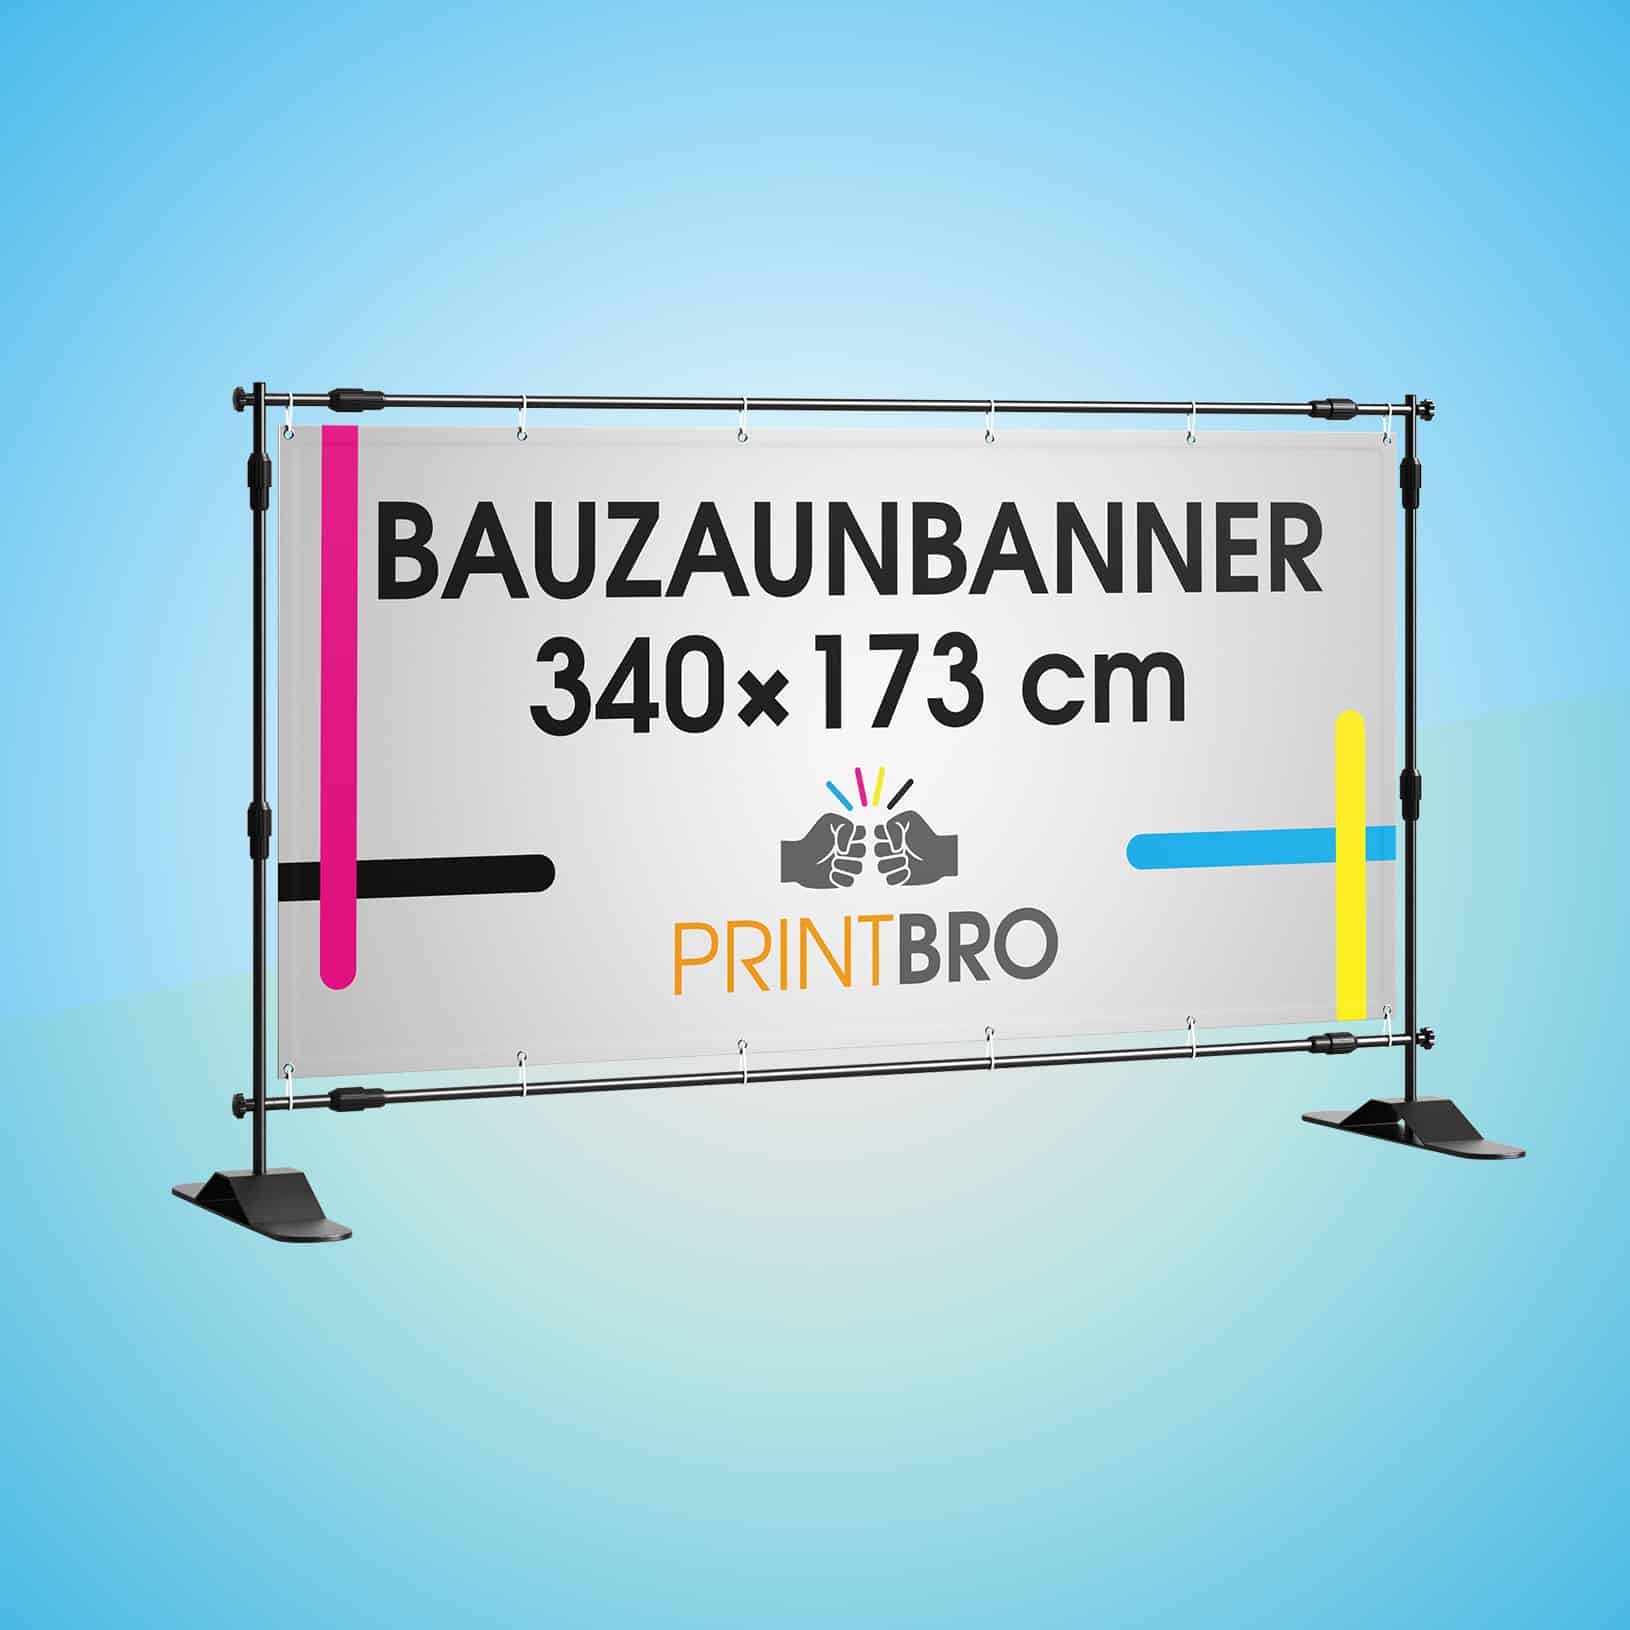 Bauzaunbanner 340 X 173 Cm Printbro